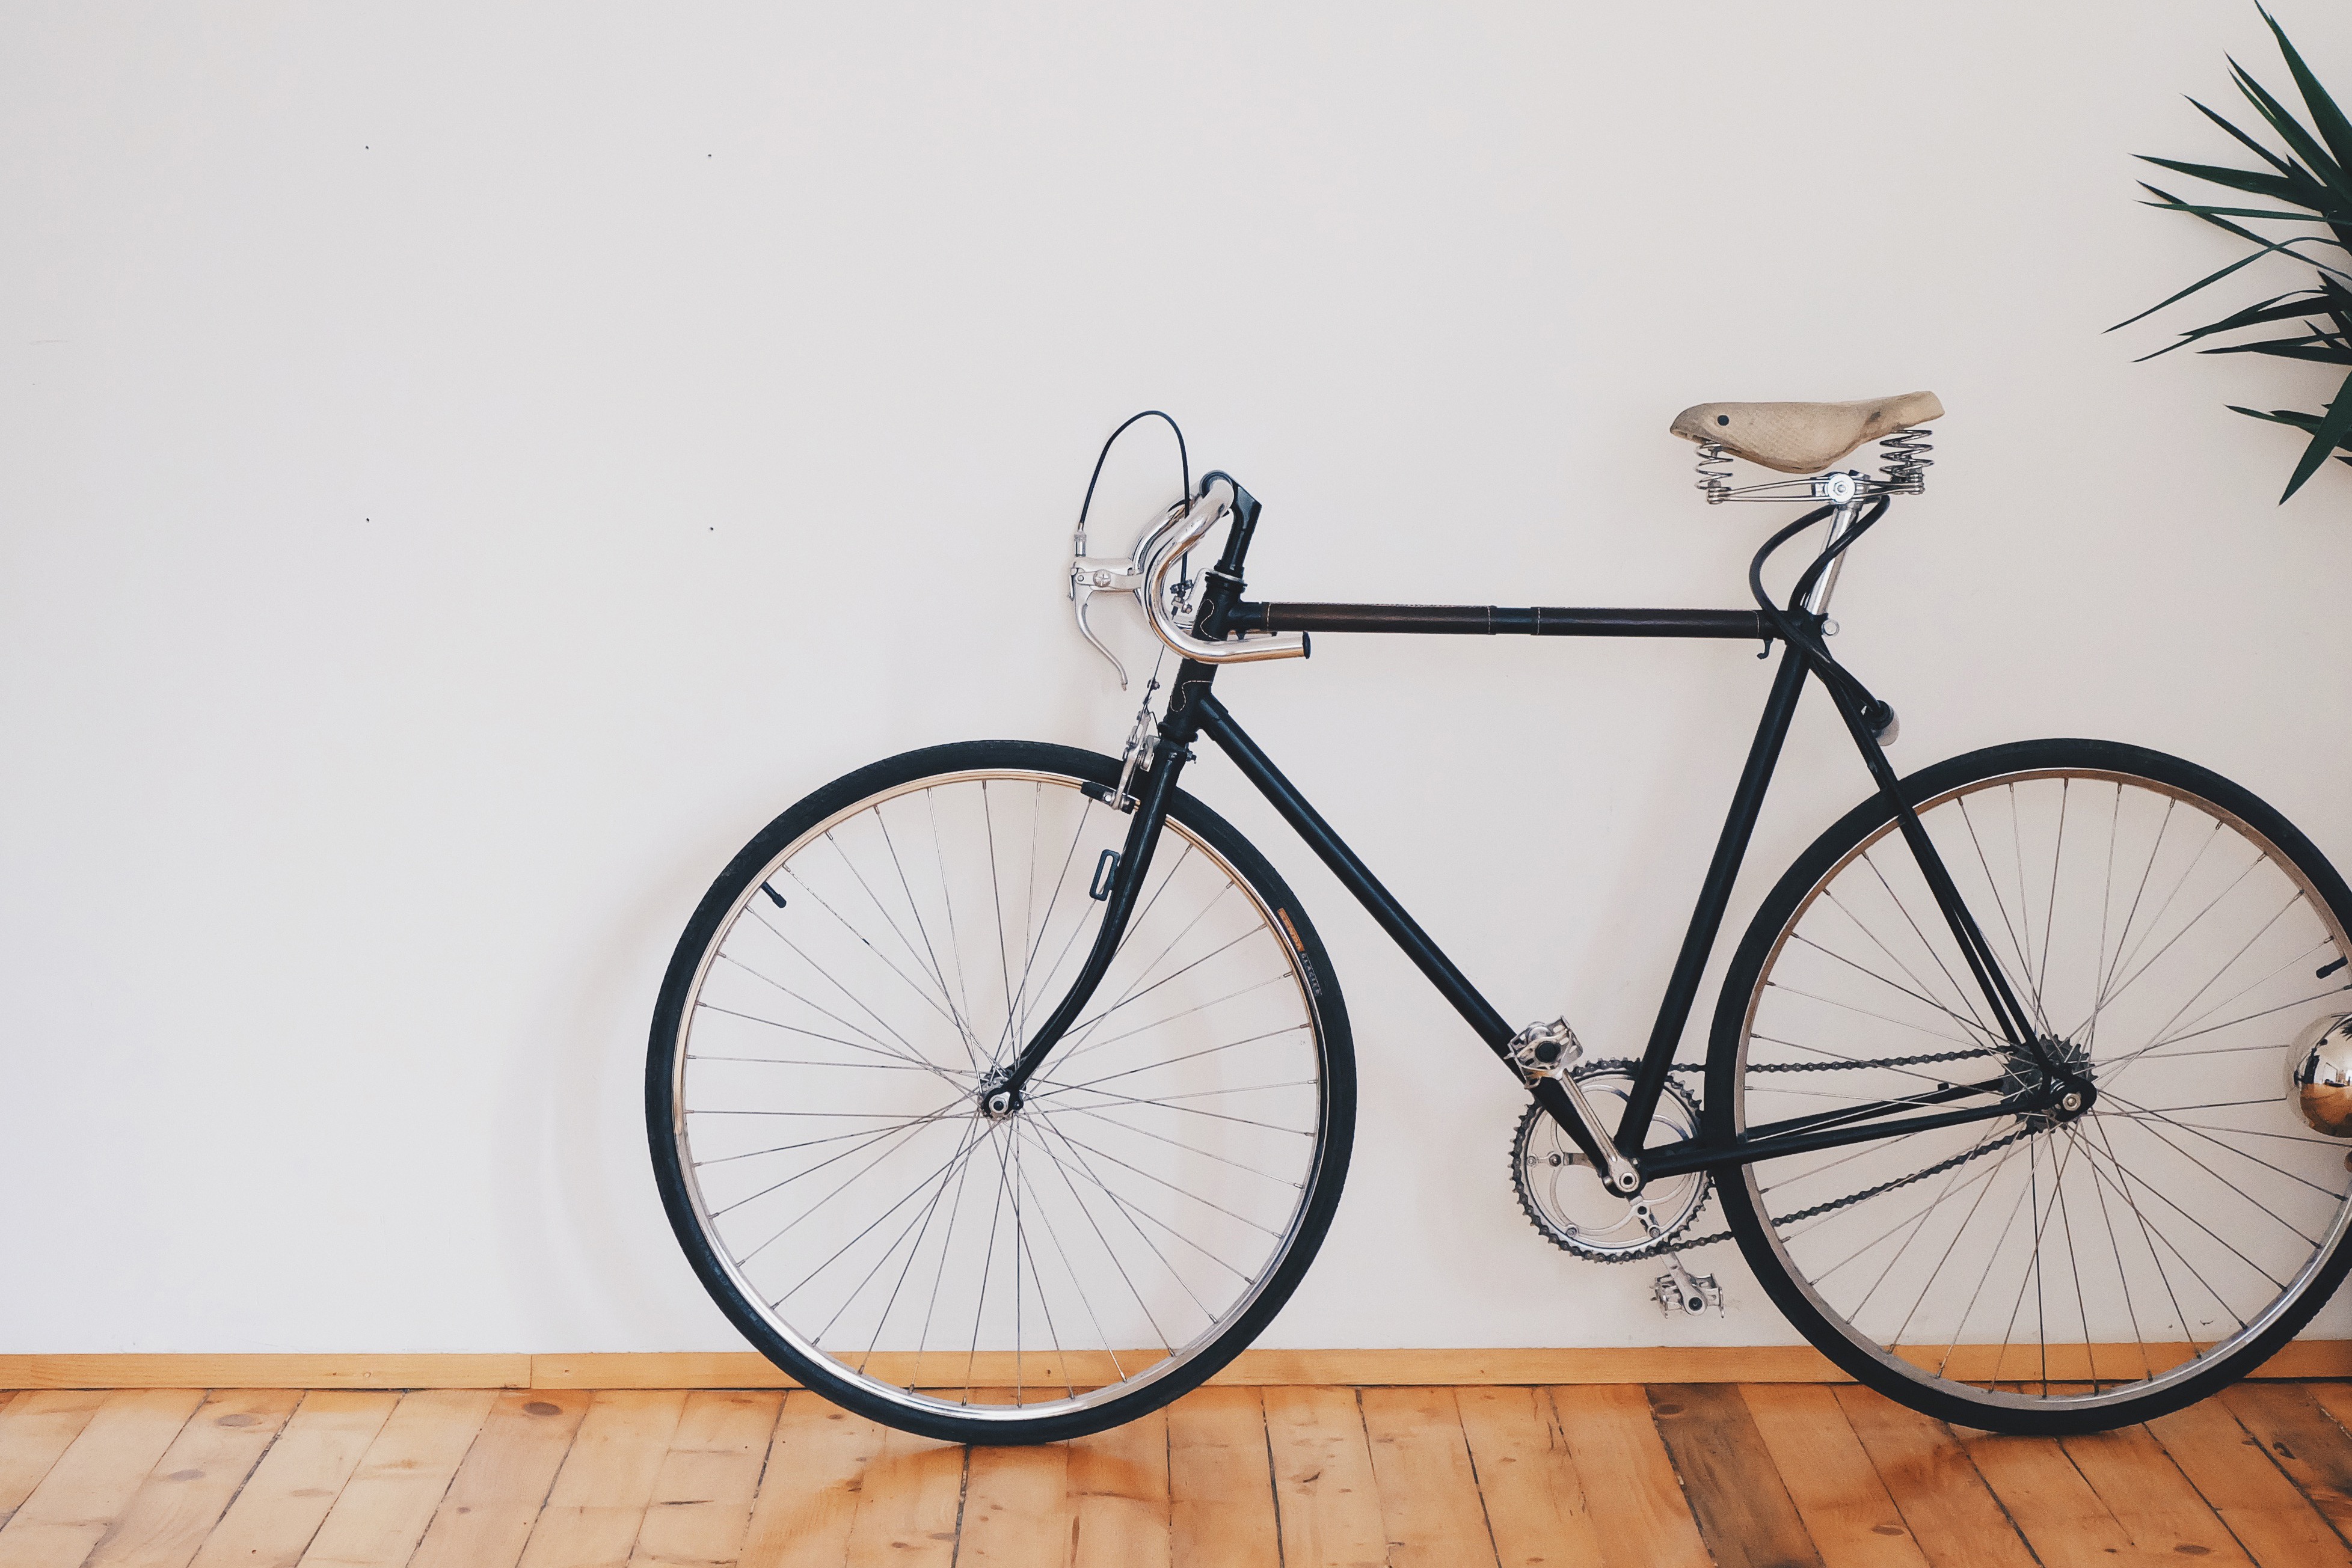 picography-bicycle-road-bike-old-vintage